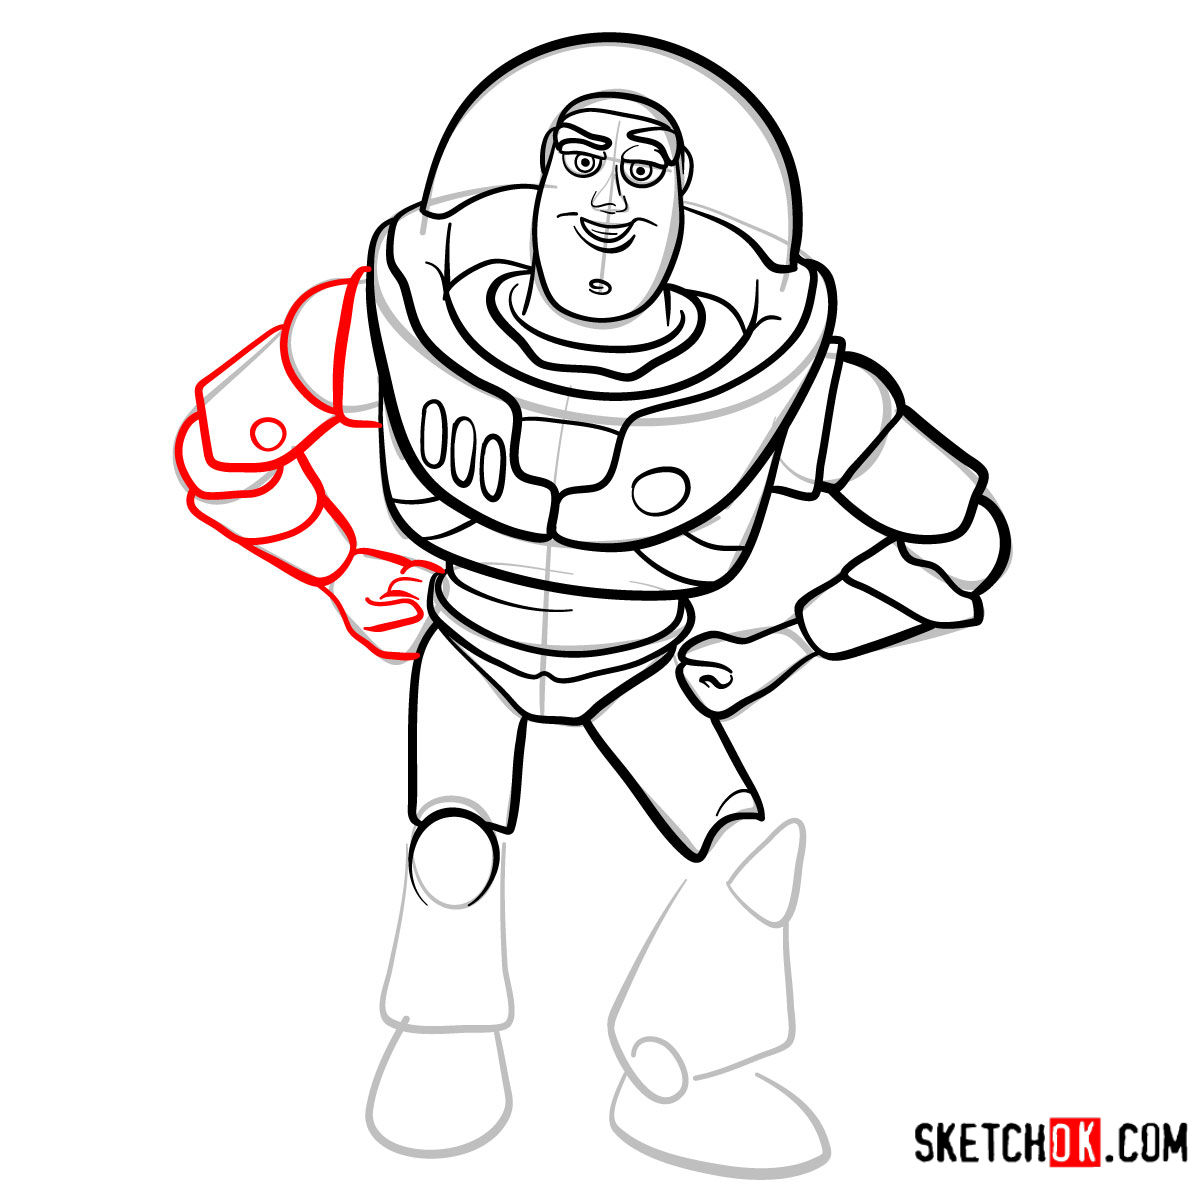 How to draw Buzz Lightyear | Toy Story - step 11